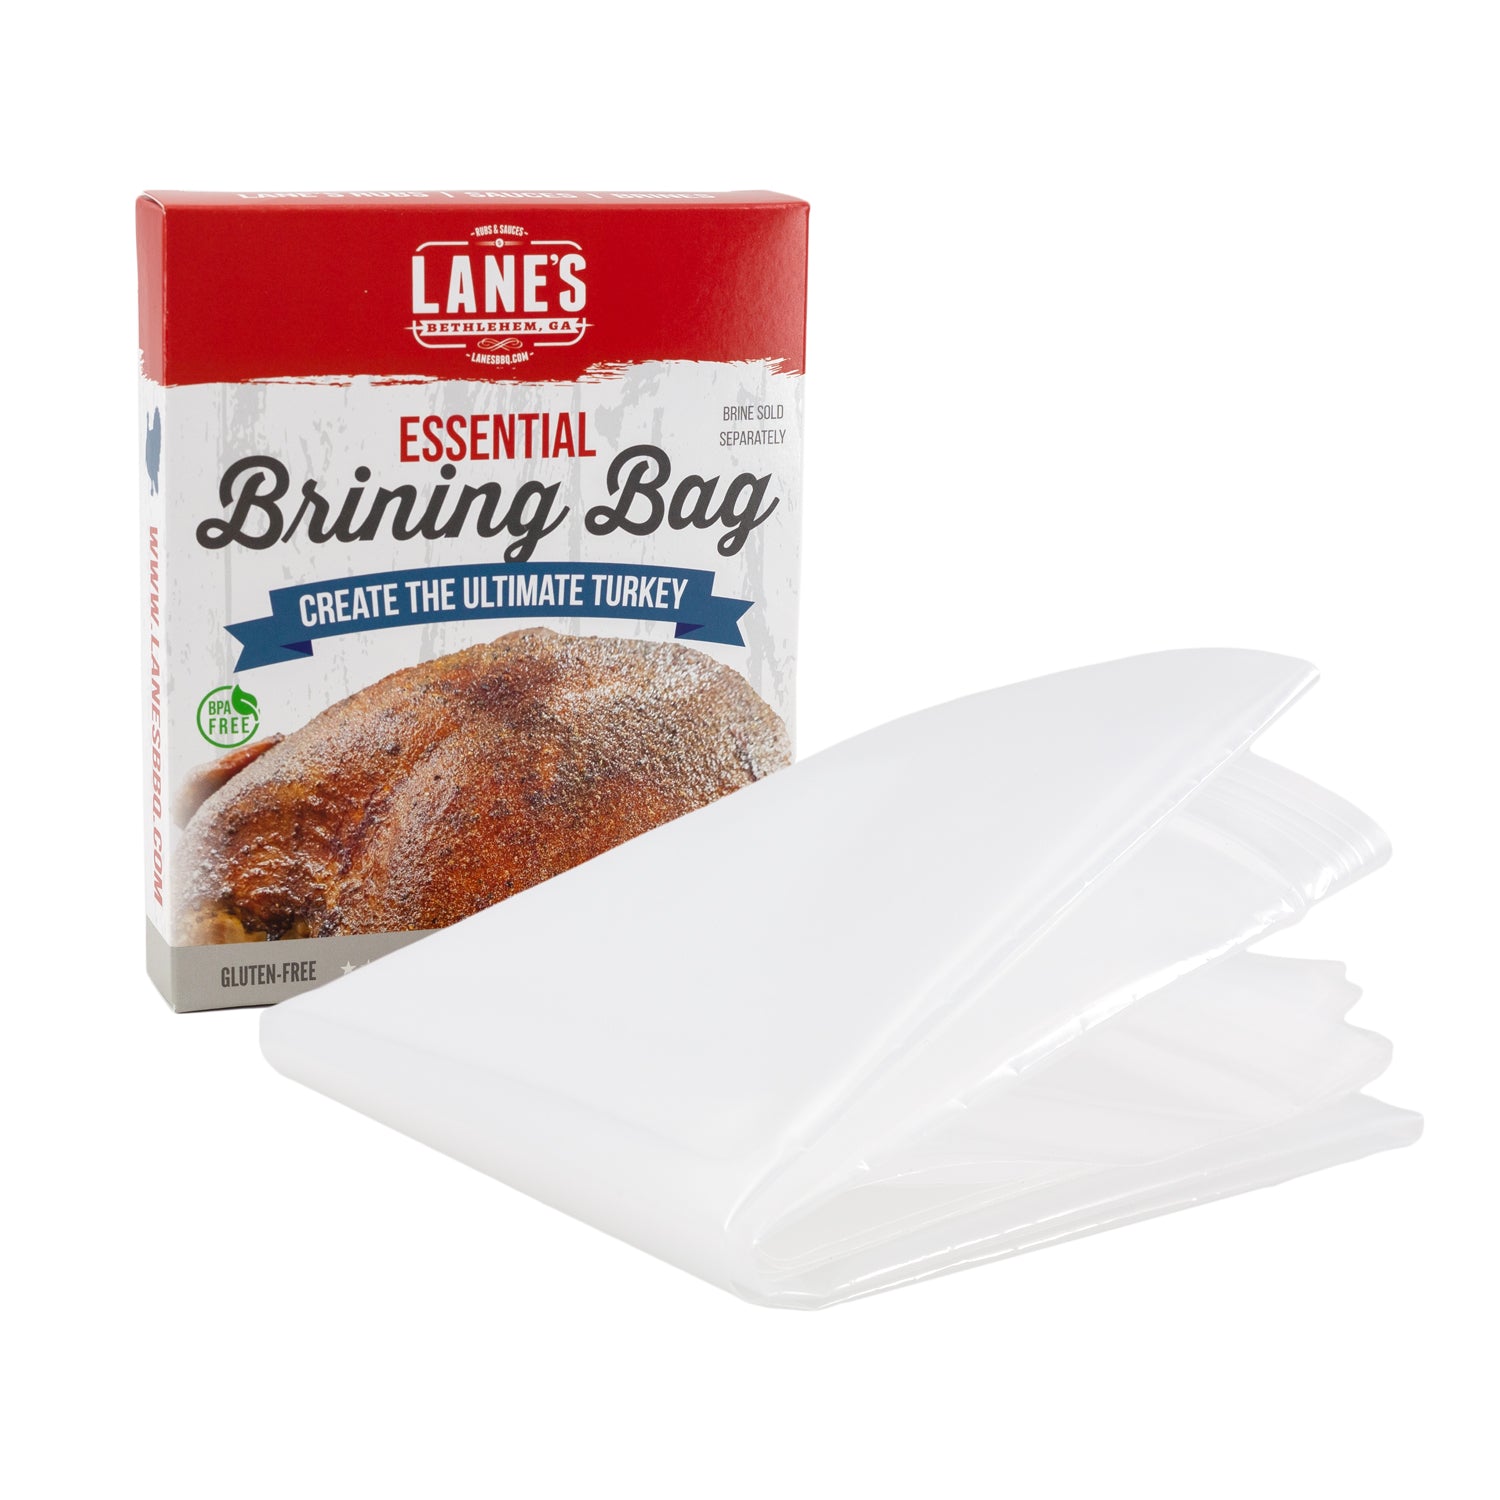 Organic Turkey Brine Kit - 16 oz. Garlic & Herb with Brine Bag by